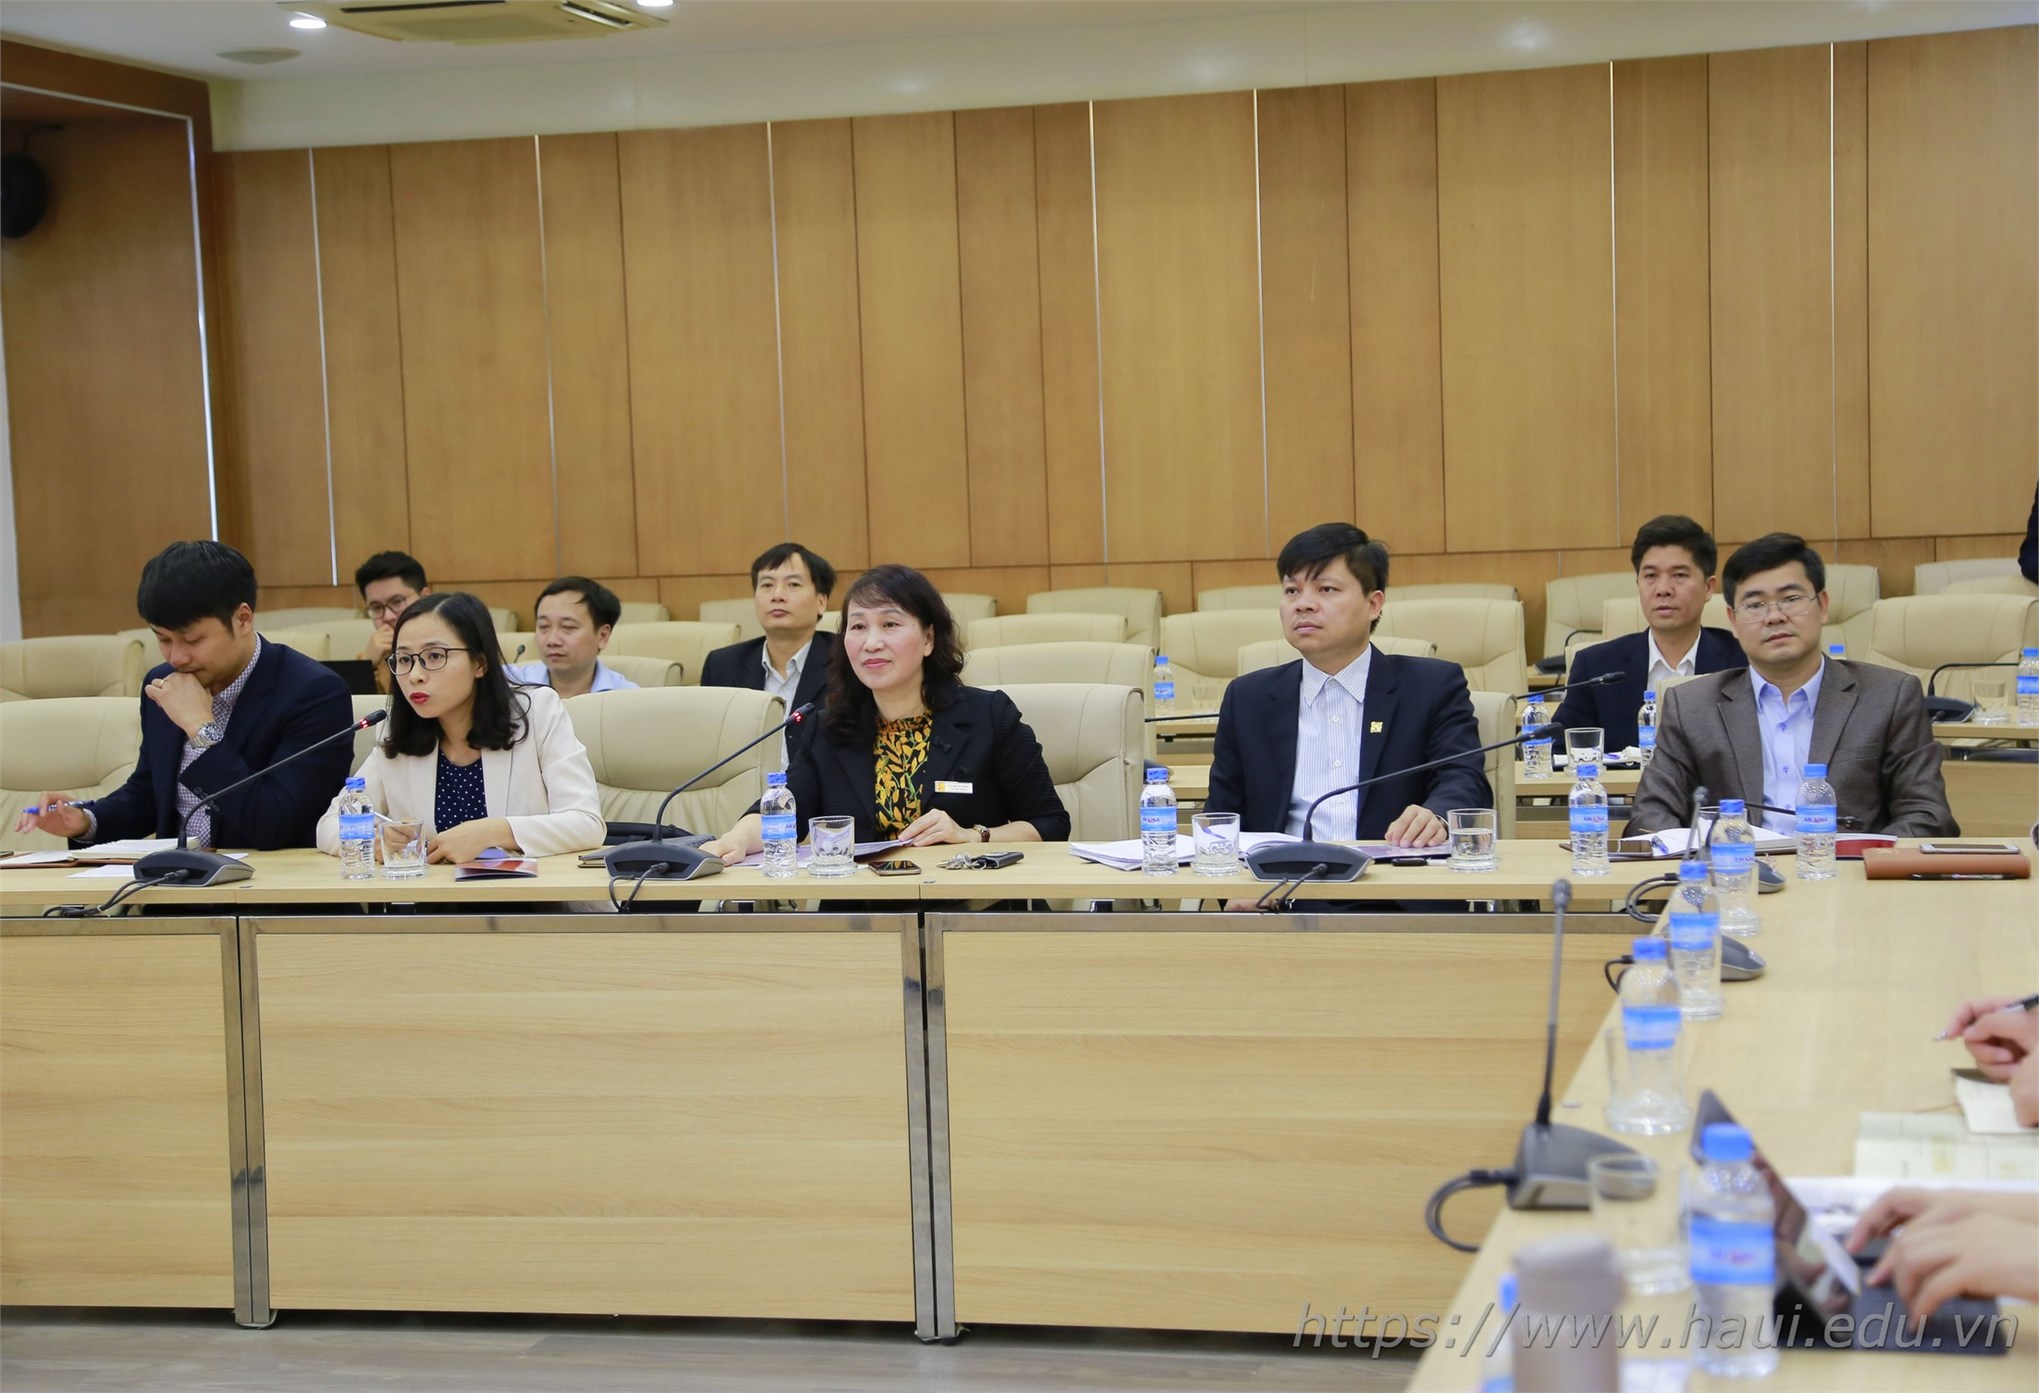 Đoàn đại biểu Hiệp hội Cơ khí Trung Quốc thăm và làm việc tại trường Đại học Công nghiệp Hà Nội